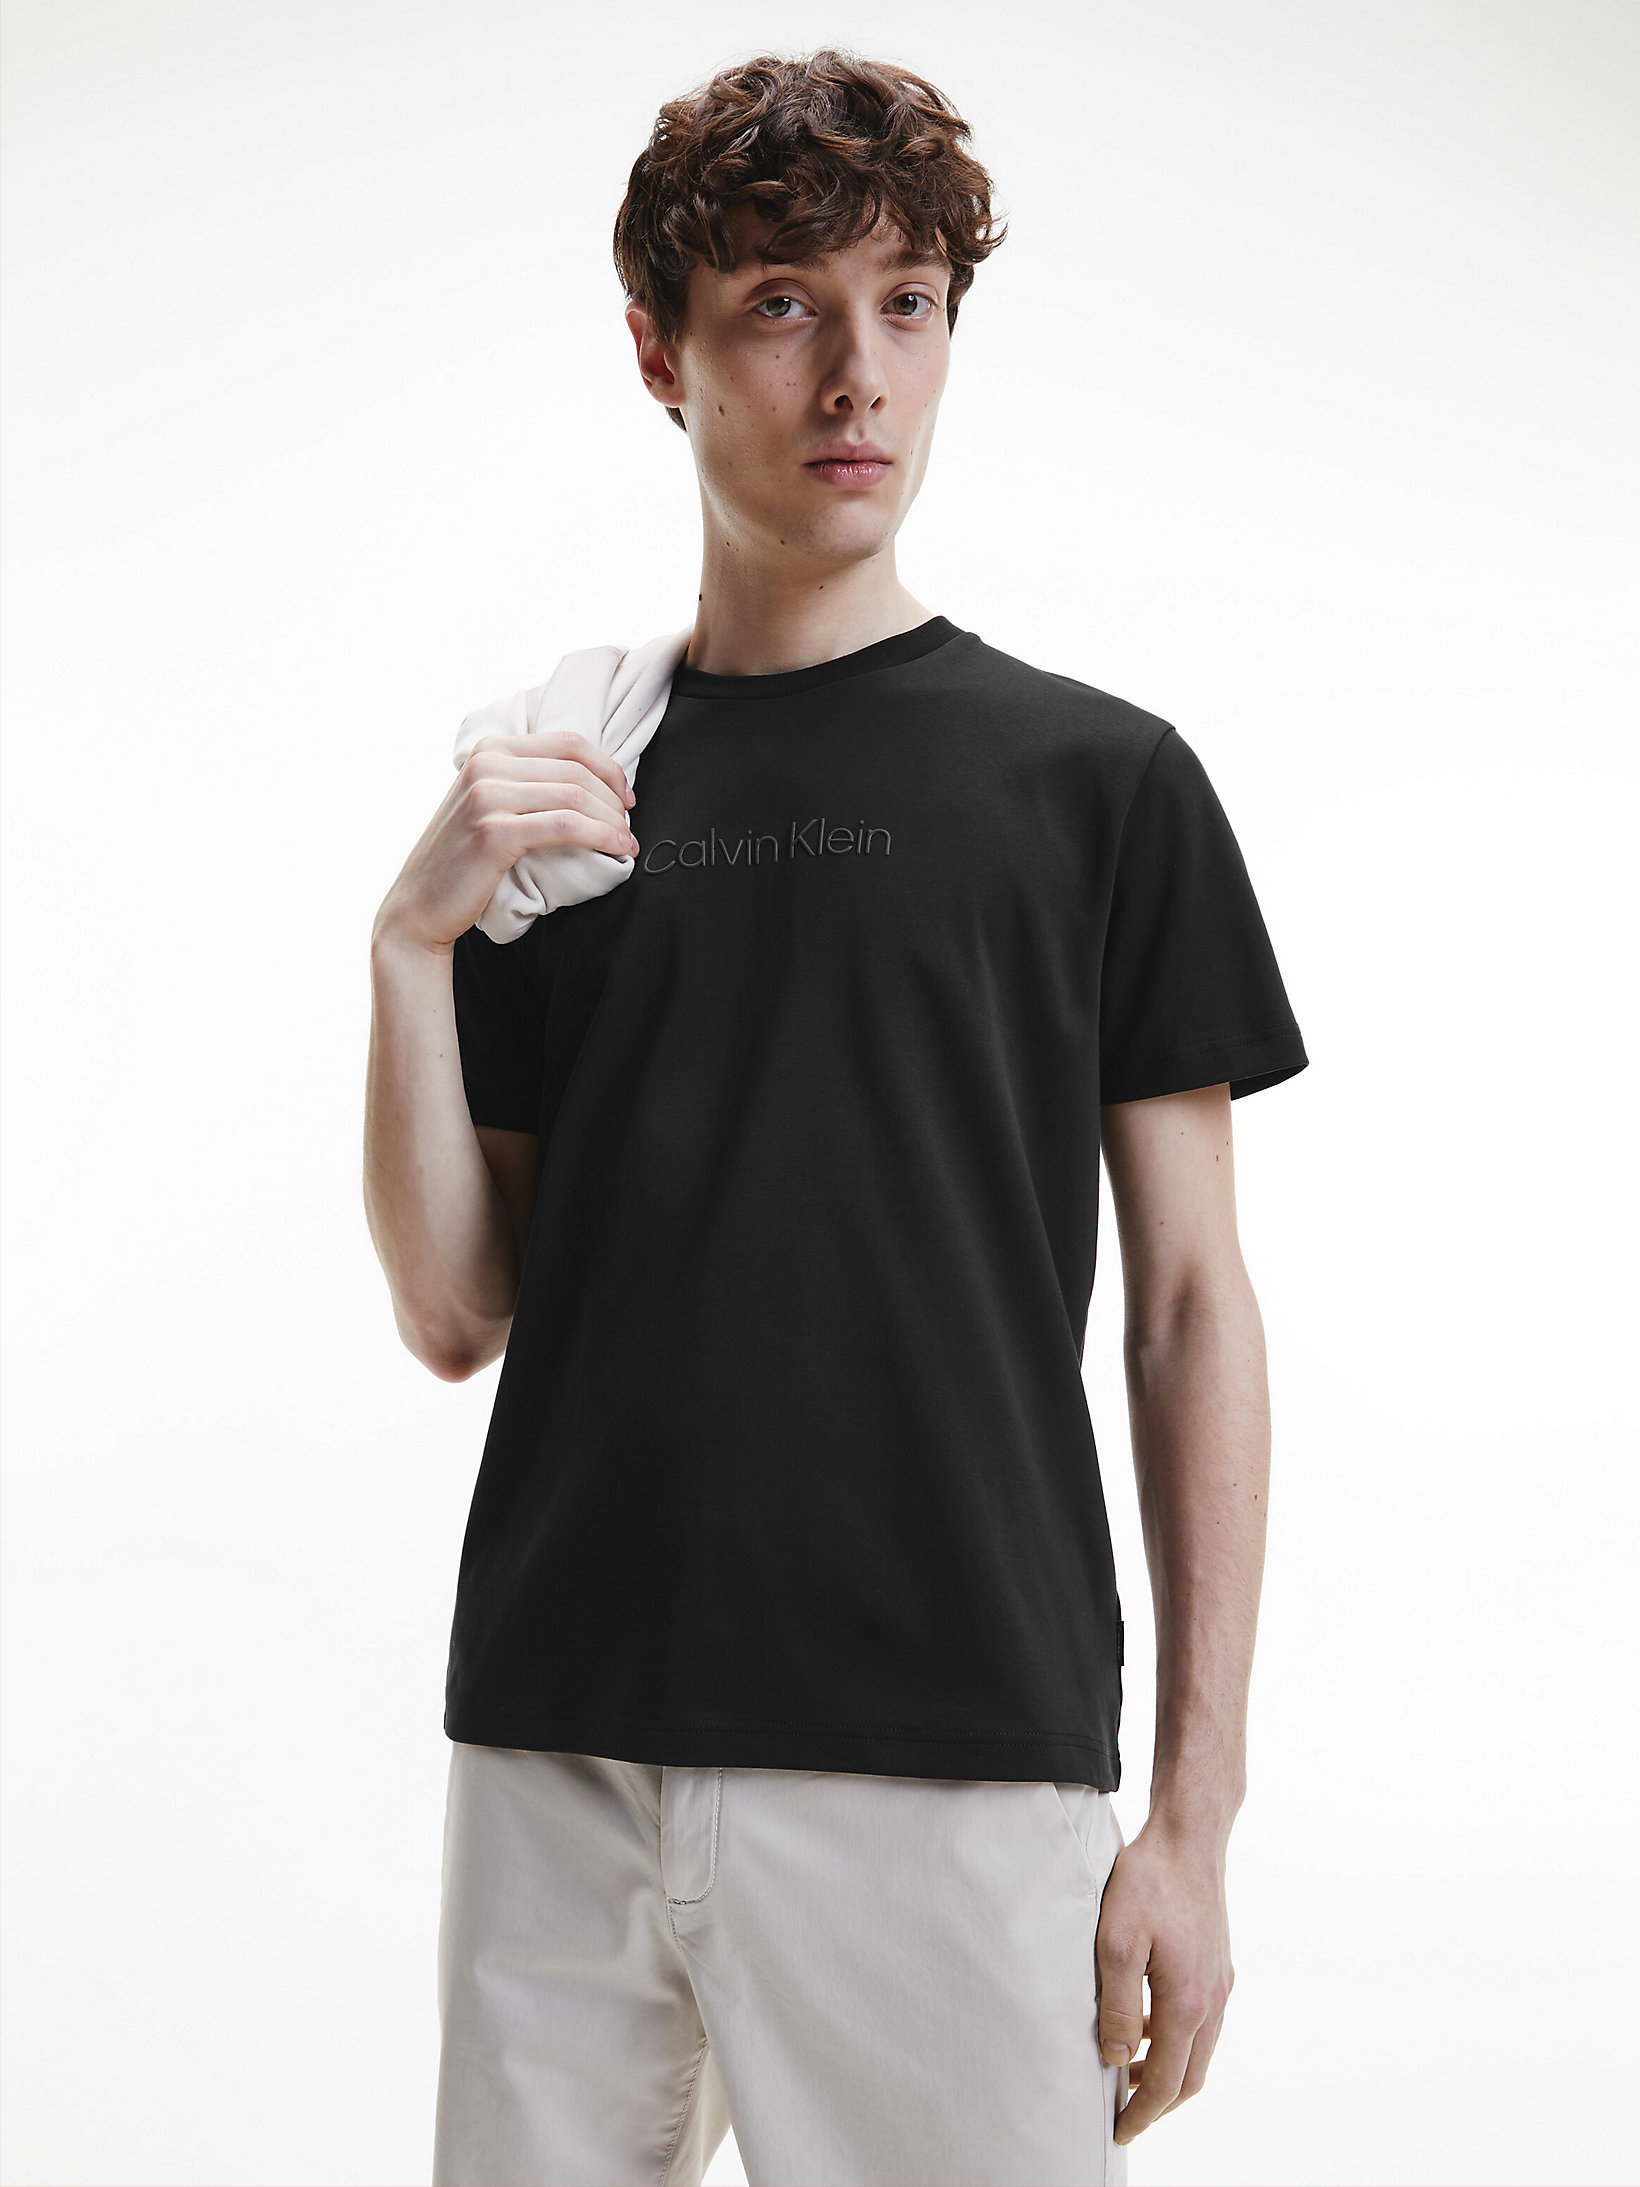 CK Black Logo T-Shirt undefined men Calvin Klein